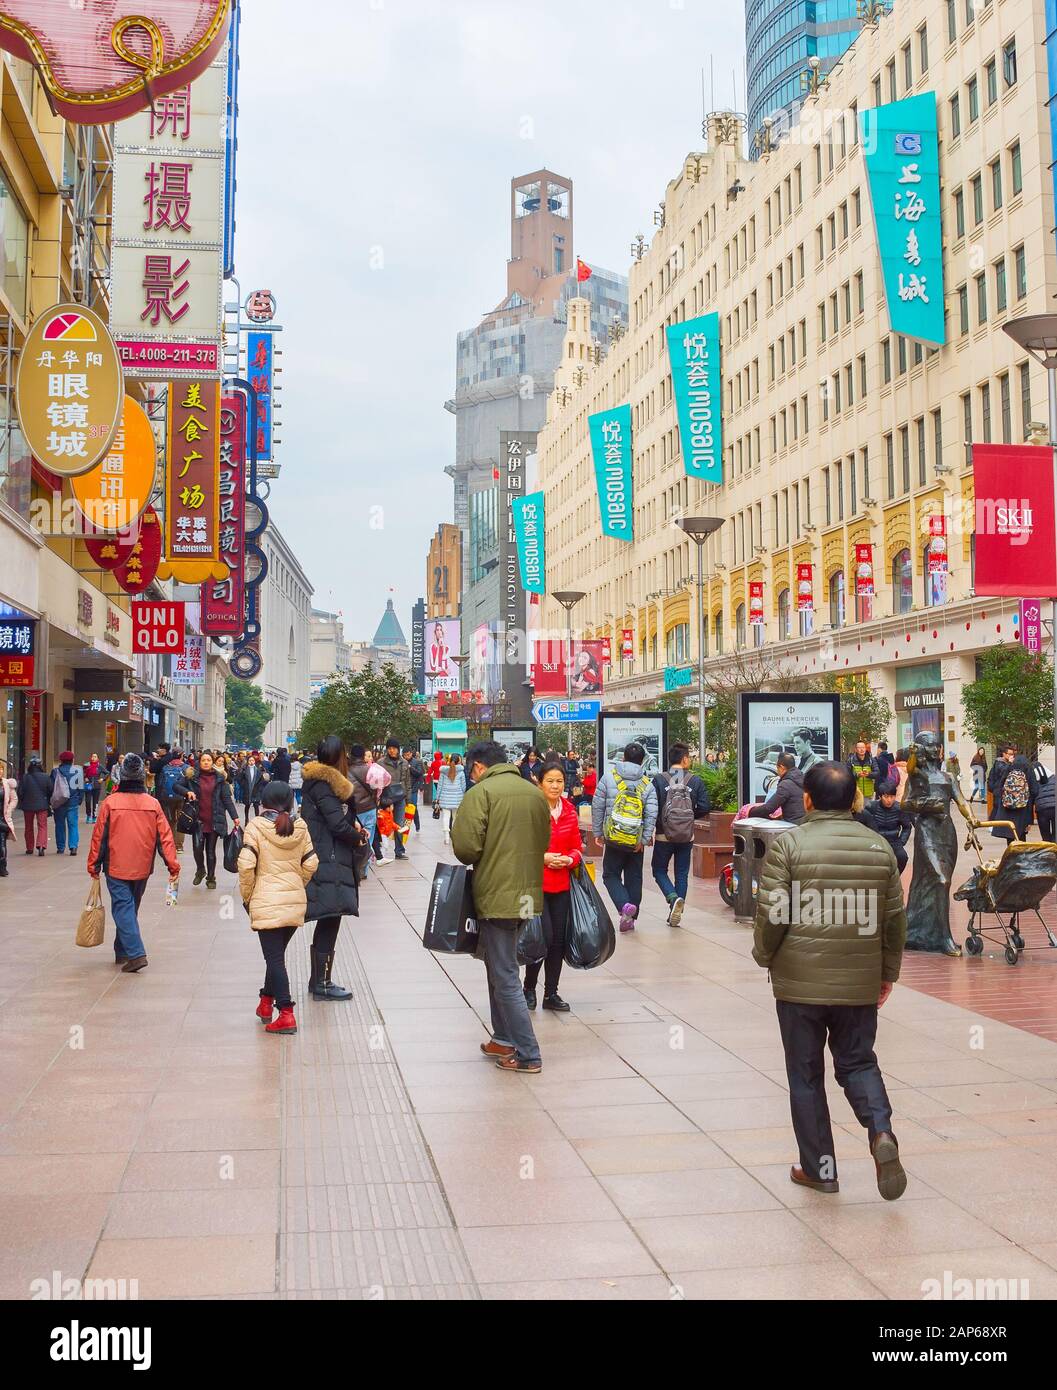 Shanghai, CHINA - DEC 28, 2016: Menschen, die auf der Straße von Nanjing in der Innenstadt von Shanghai laufen. Die Gegend ist das Haupteinkaufsviertel der Stadt Stockfoto